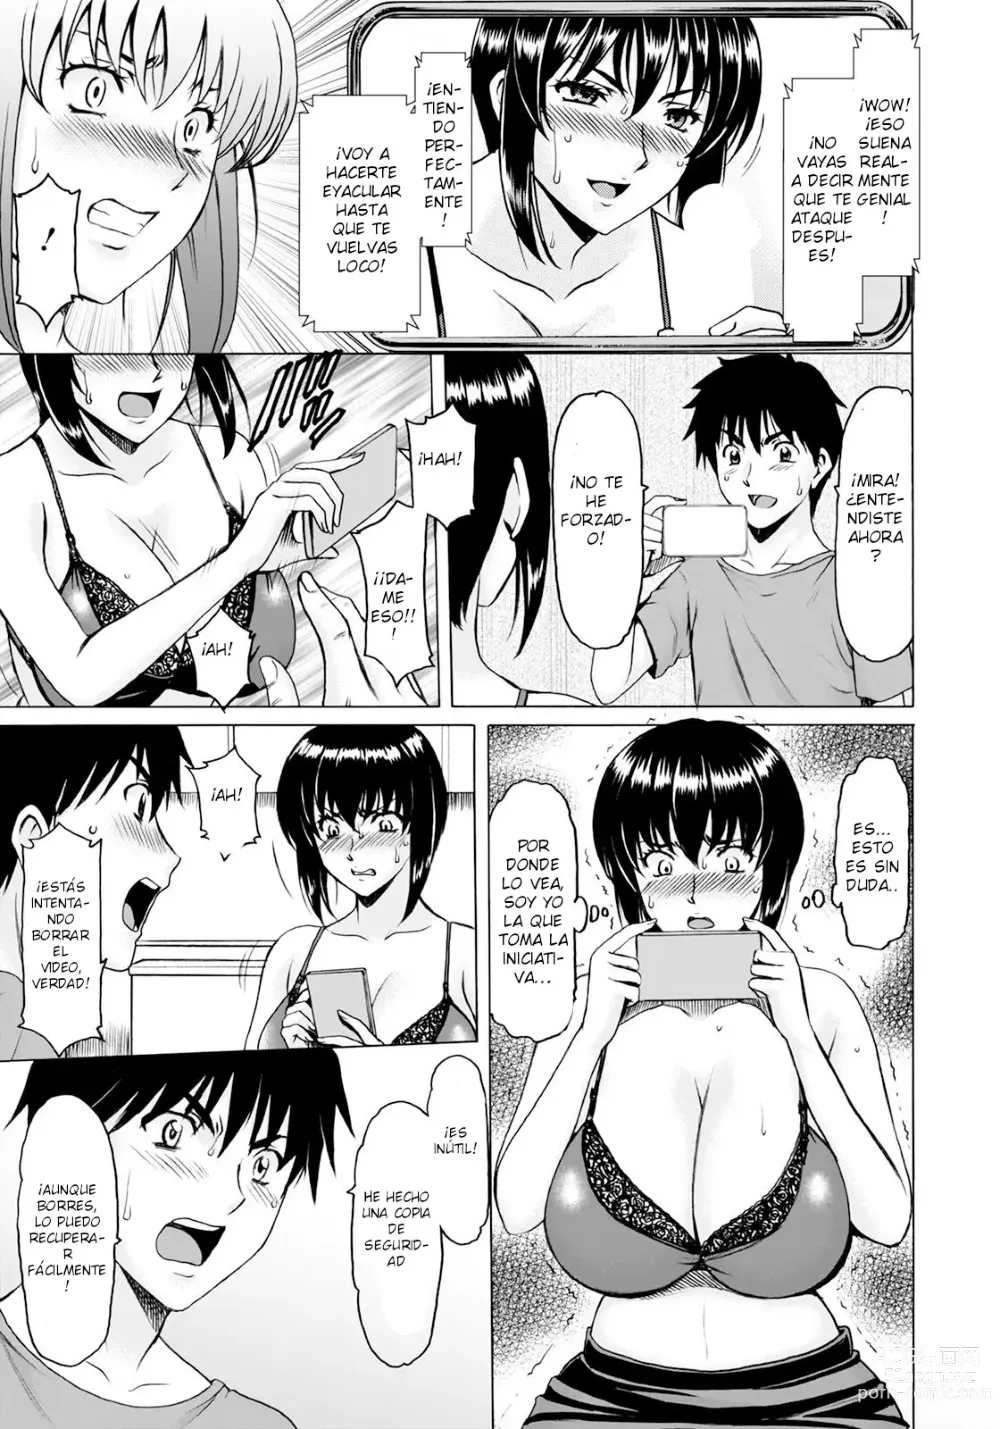 Page 3 of manga Manatsu no Rakuen ~Haramase no Ie~ Vol. 4